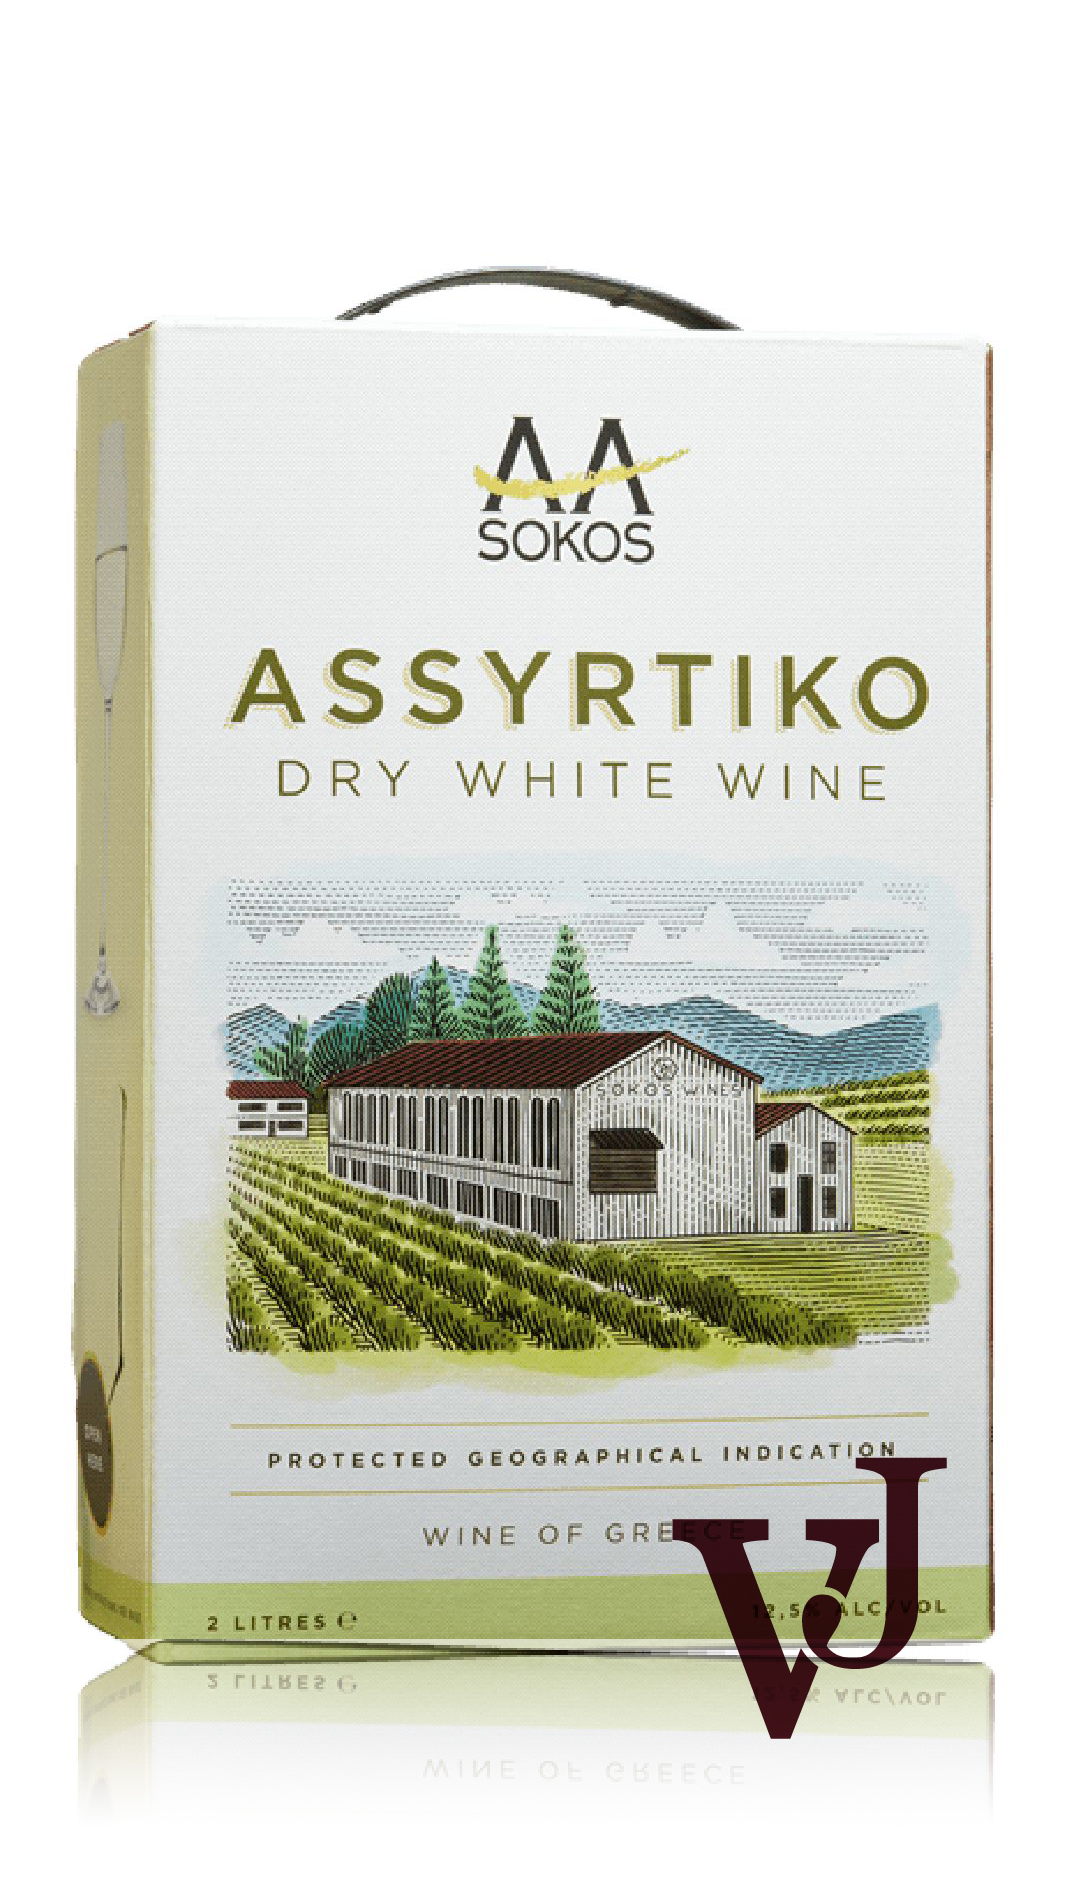 Vitt Vin - Sokos Assyrtiko artikel nummer 268807 från producenten Sokos från området Grekland